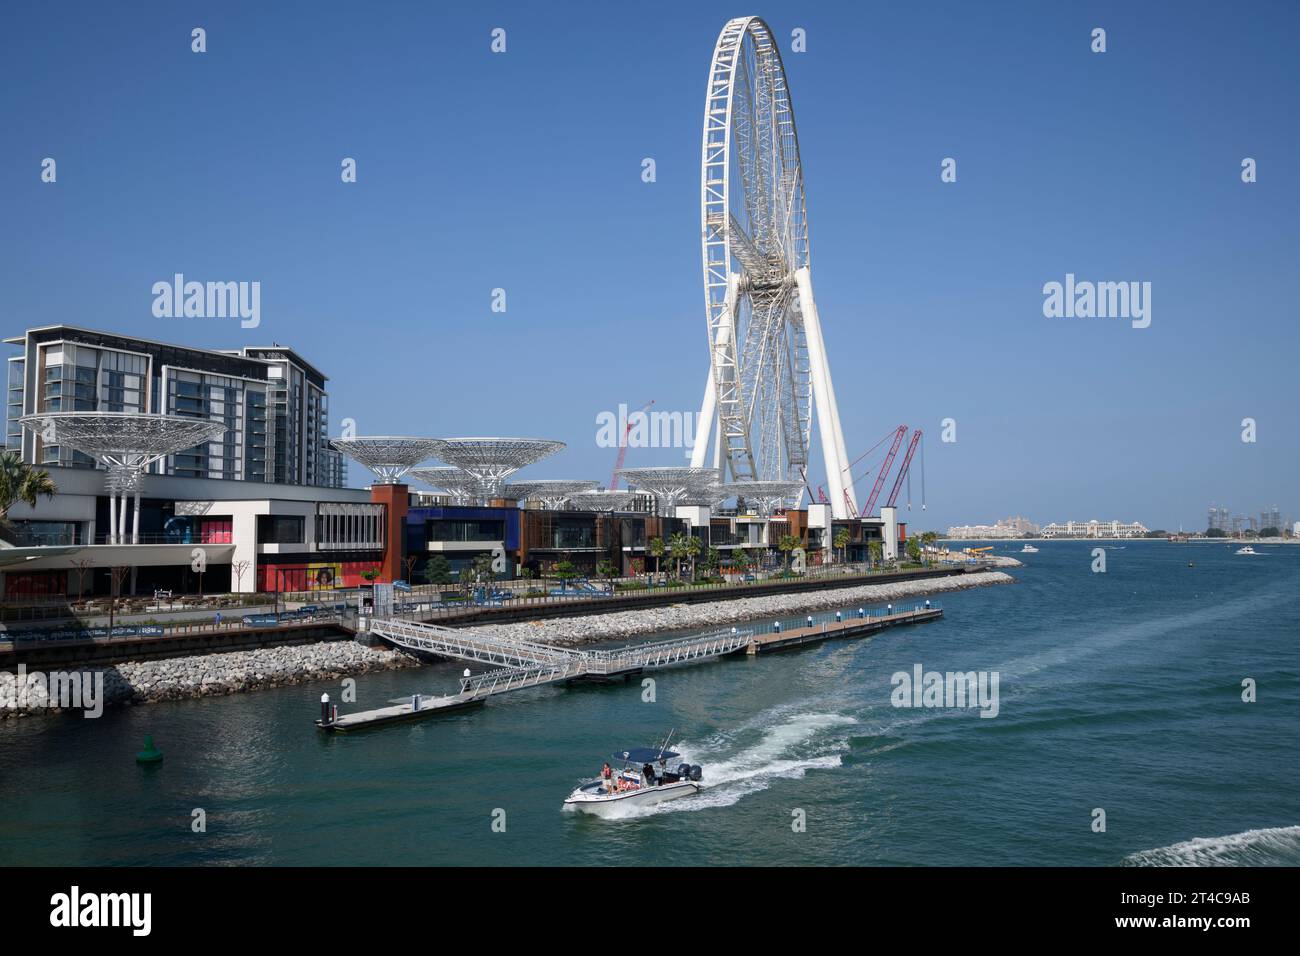 Émirats arabes Unis, Dubaï, 8 décembre 2018. Grande roue AIN DUBAI en construction, la plus haute roue géante d'observation, située sur Blue Waters Island. Banque D'Images